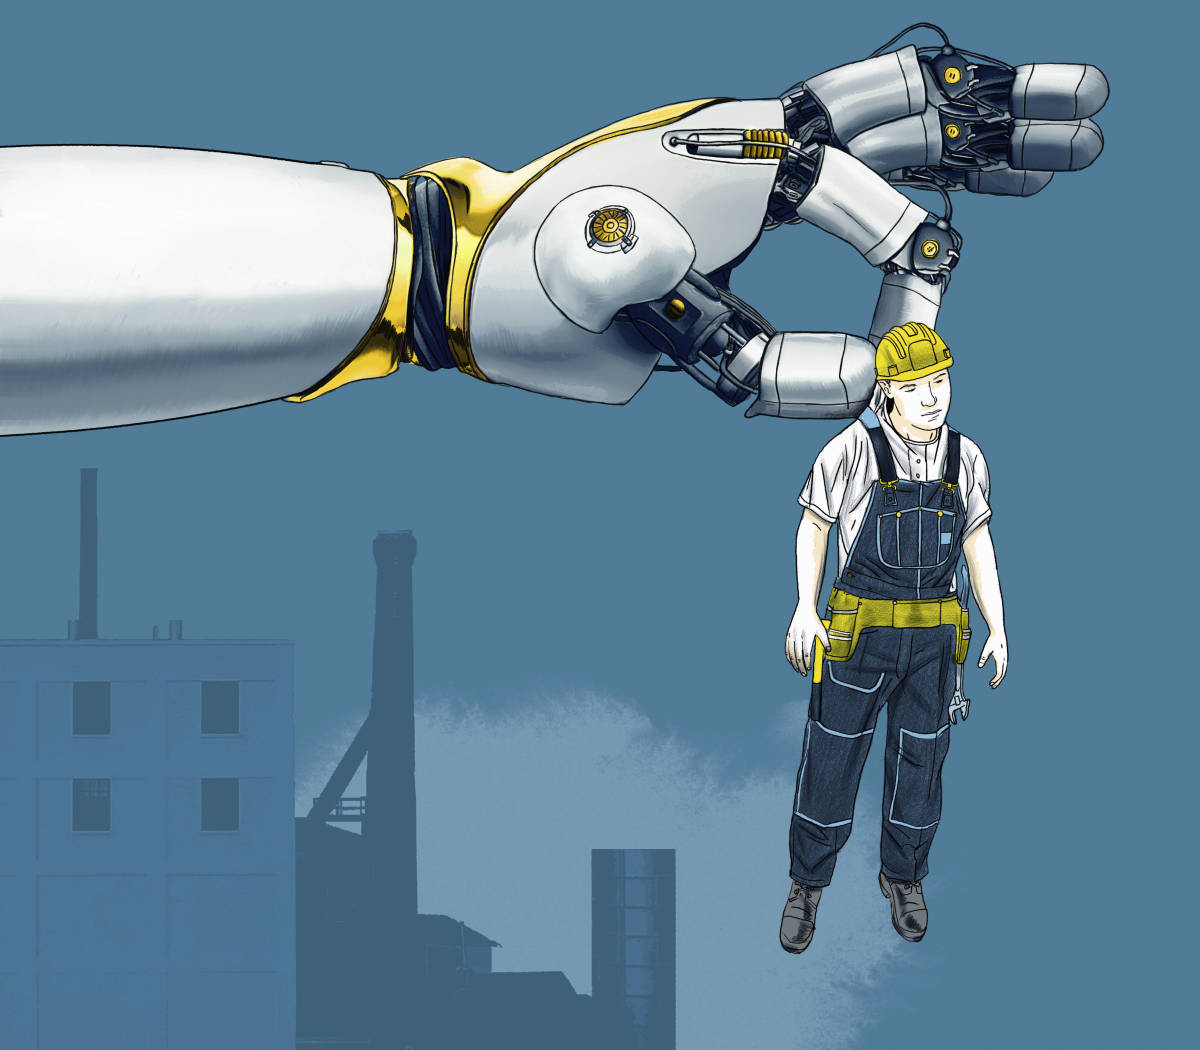 20240221-image-imago-mb-Menschen befürchten, dass Roboter ihre Arbeit übernehmen